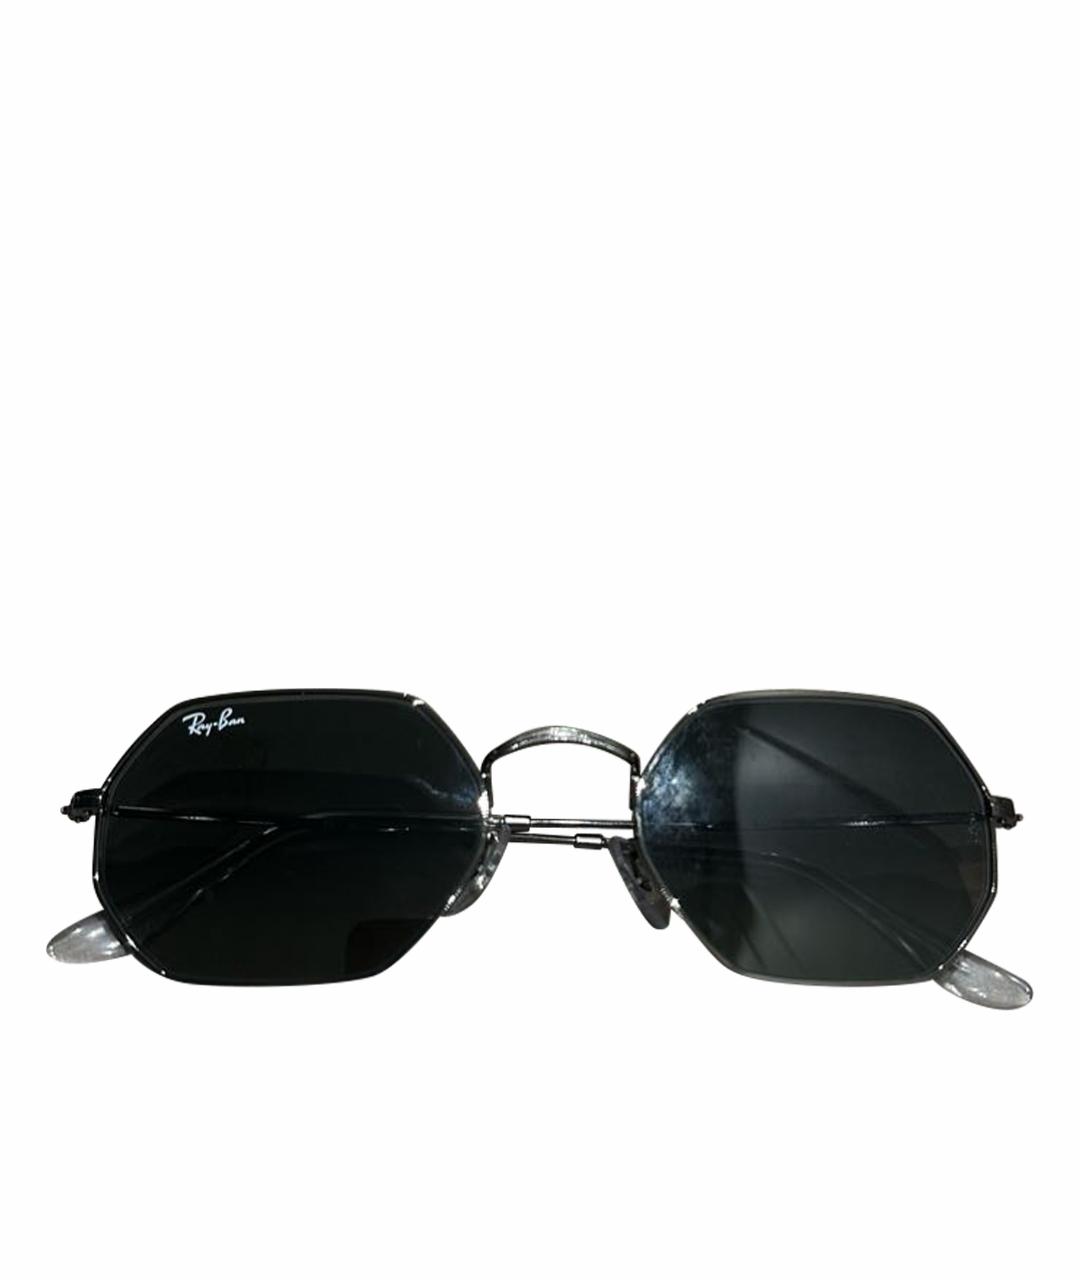 RAY BAN Антрацитовые металлические солнцезащитные очки, фото 1